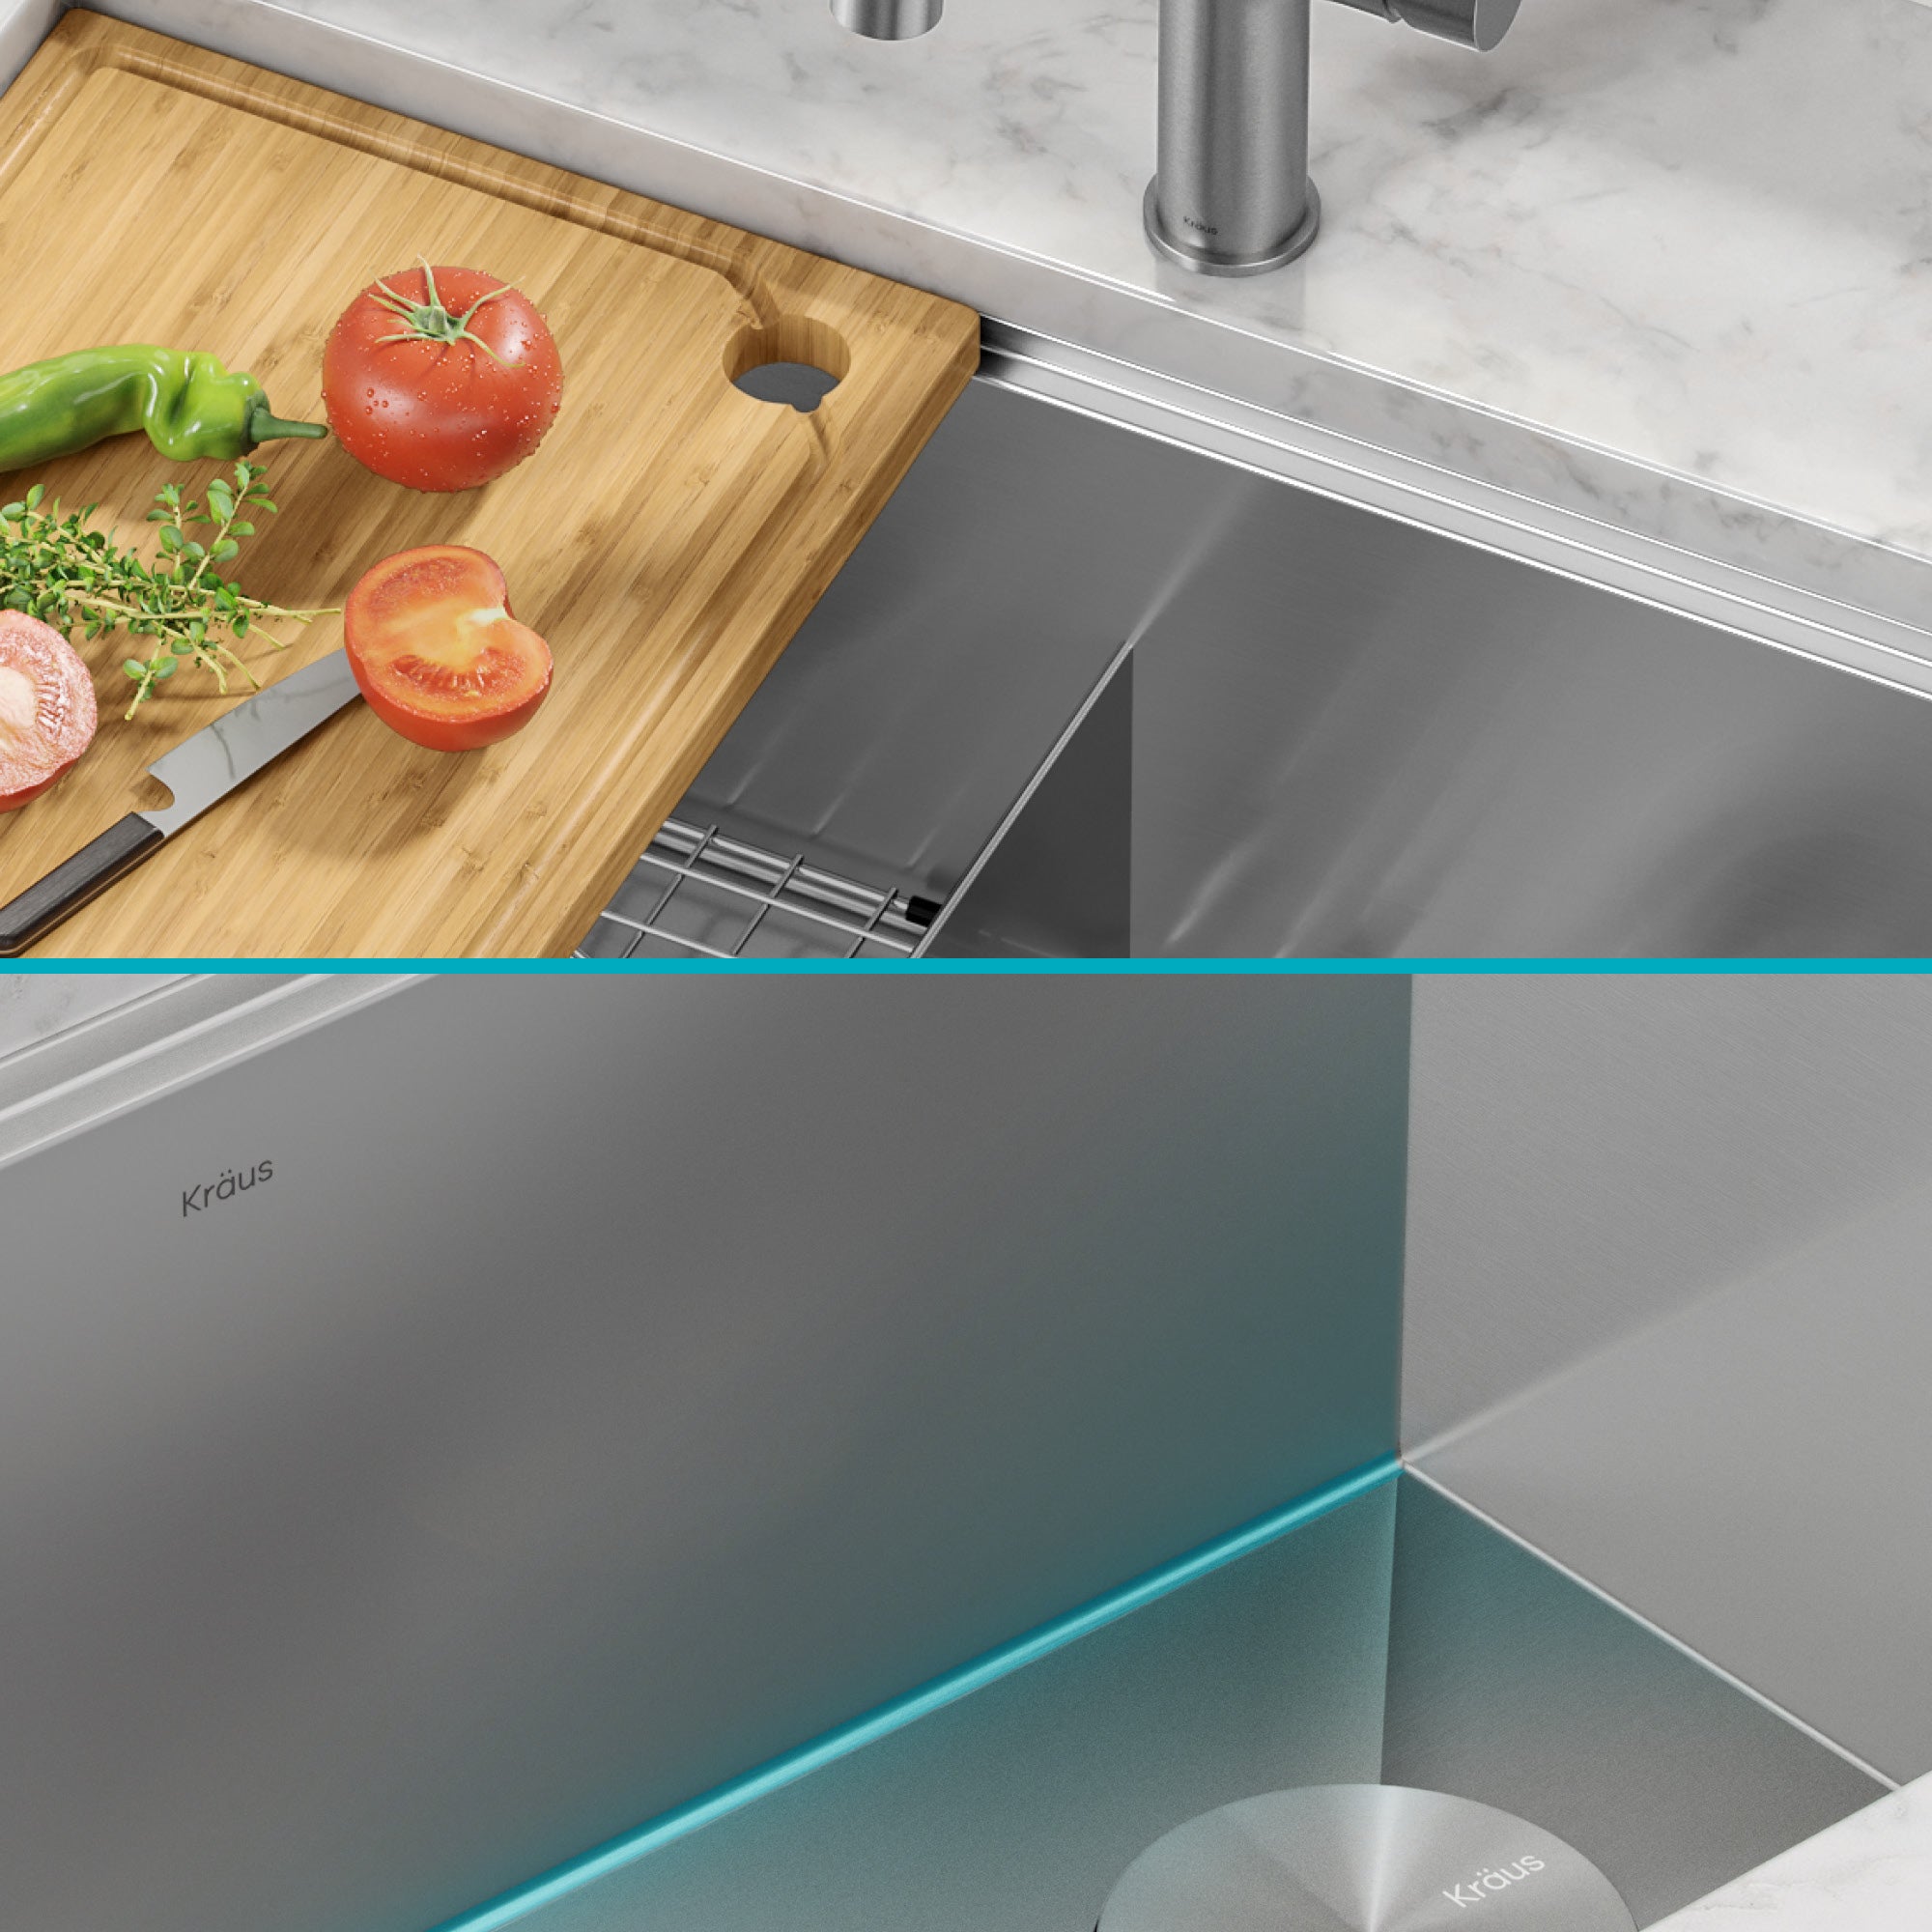 KRAUS Kore Workstation 30 Undermount 16 Gauge Kitchen Sink — DirectSinks